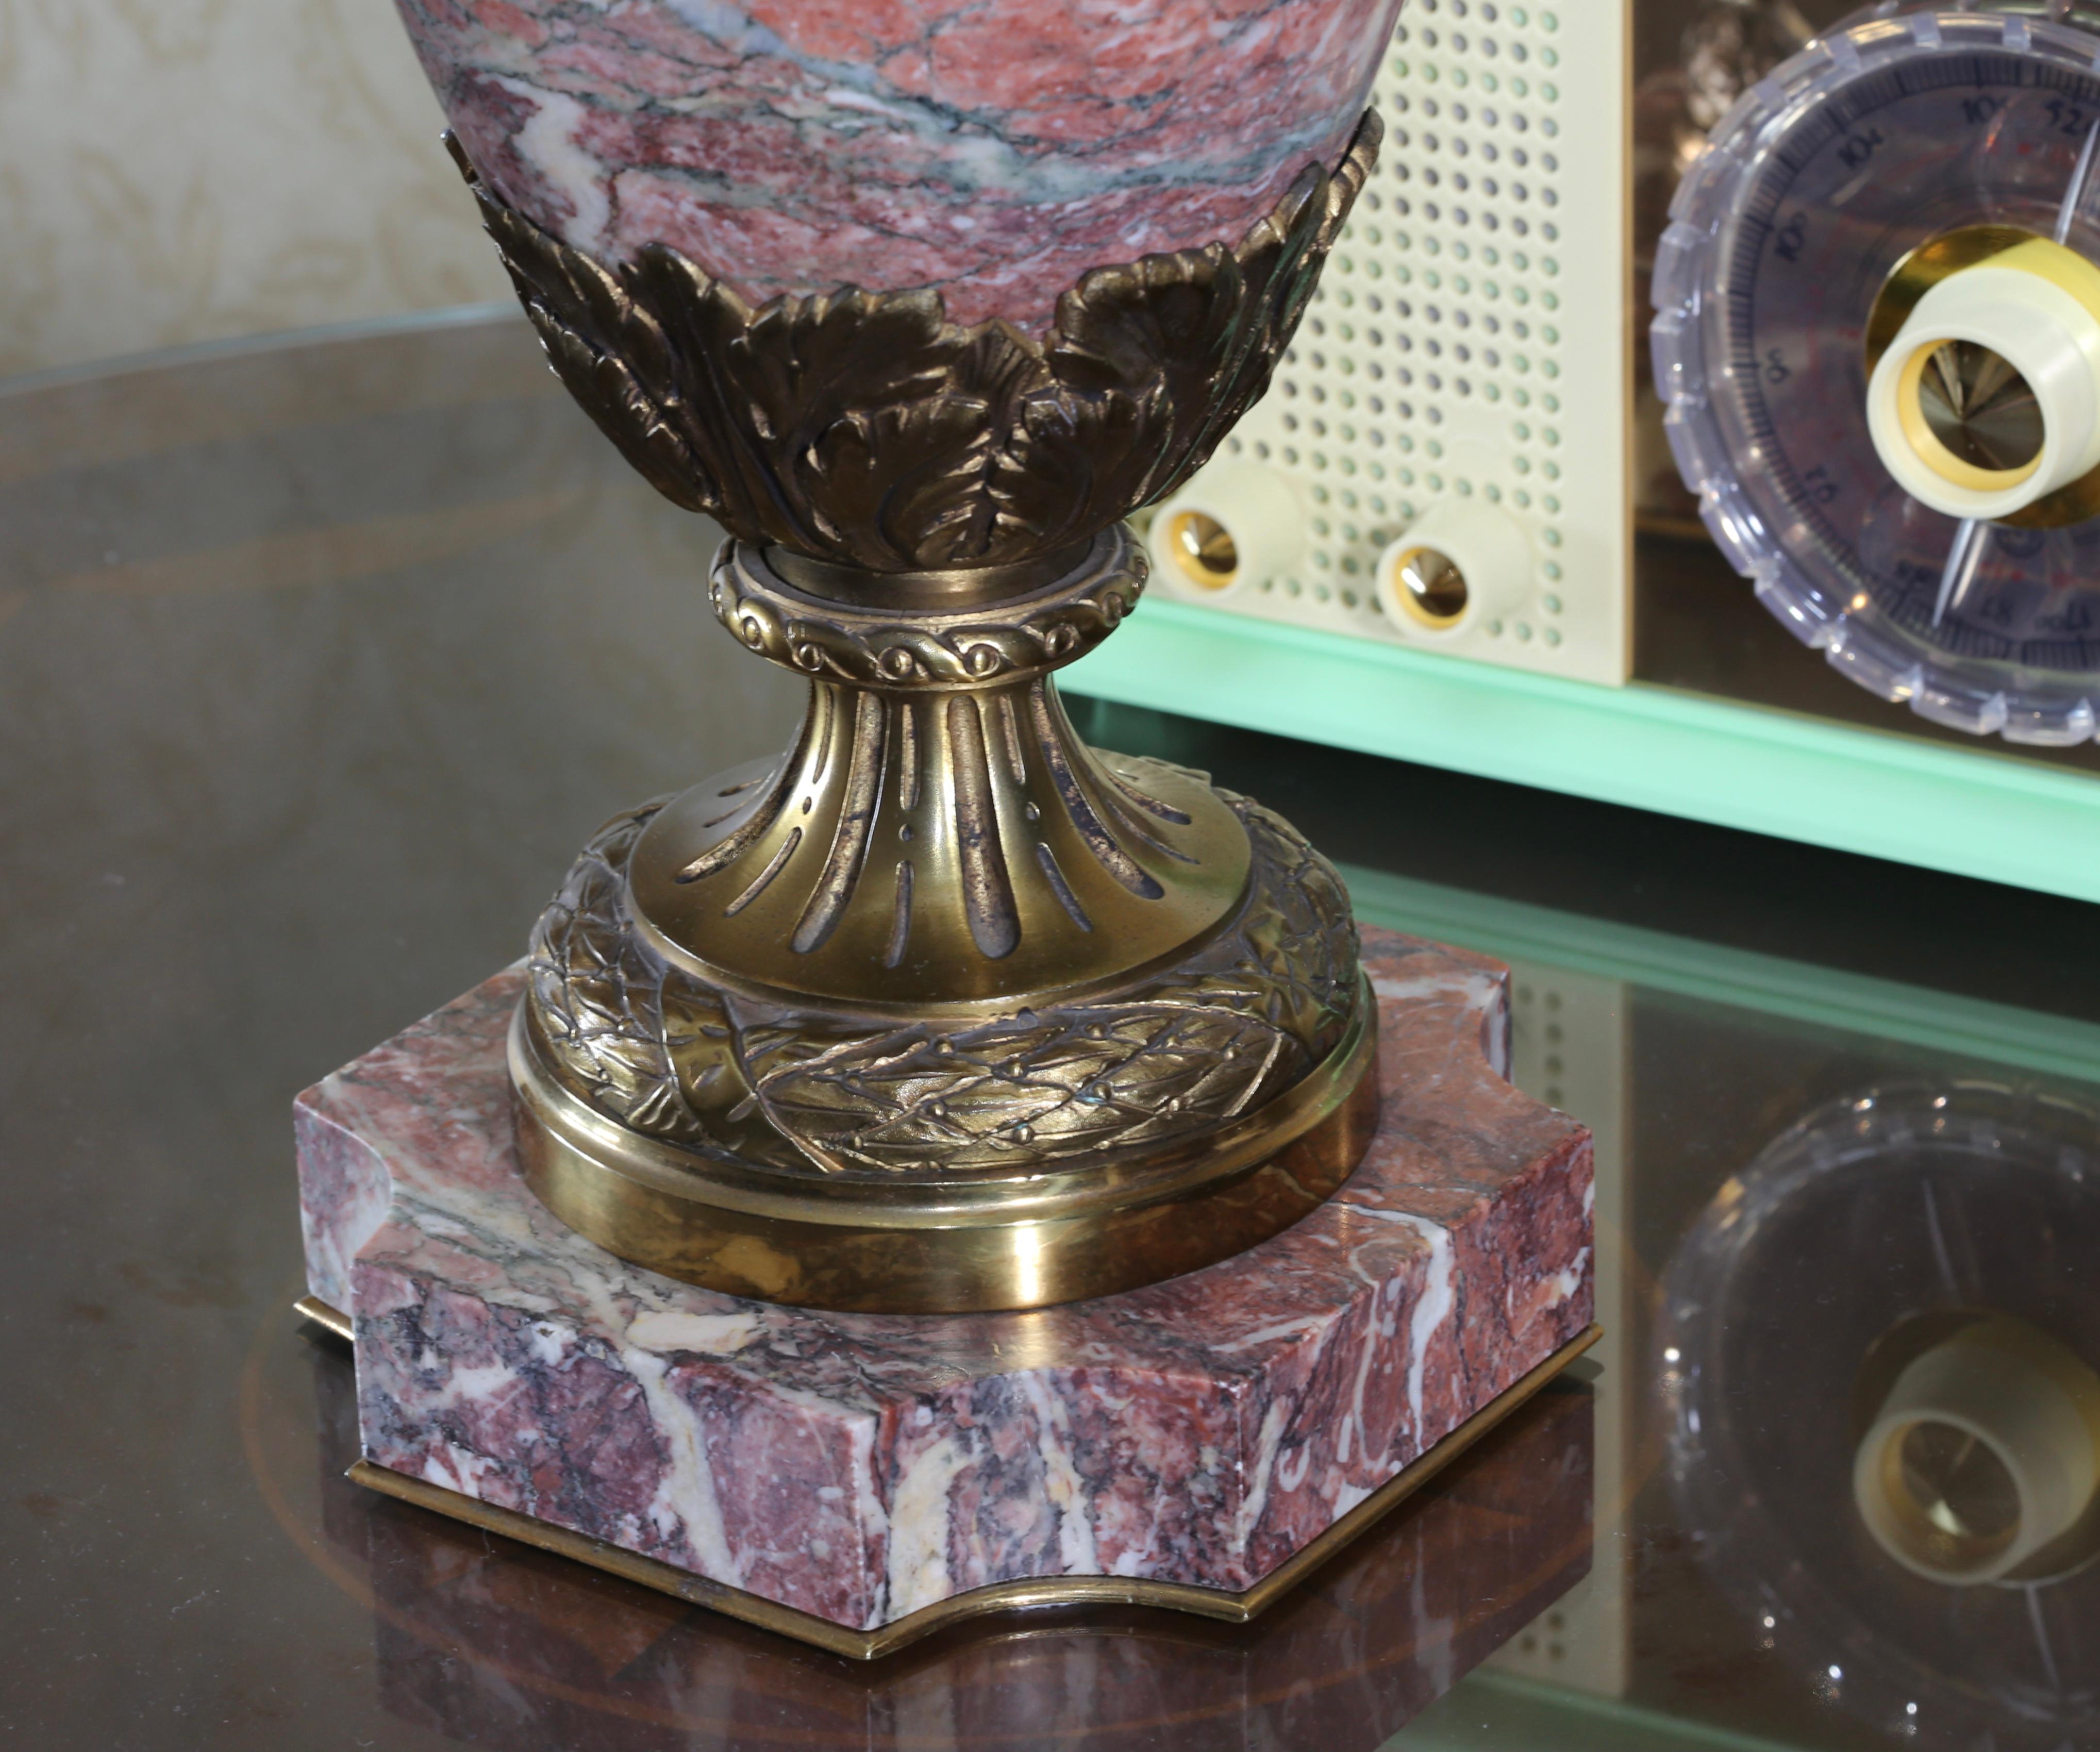 Bronze Lampe de table en bronze doré début 20ème siècle - Christie's 2011 Auction en vente